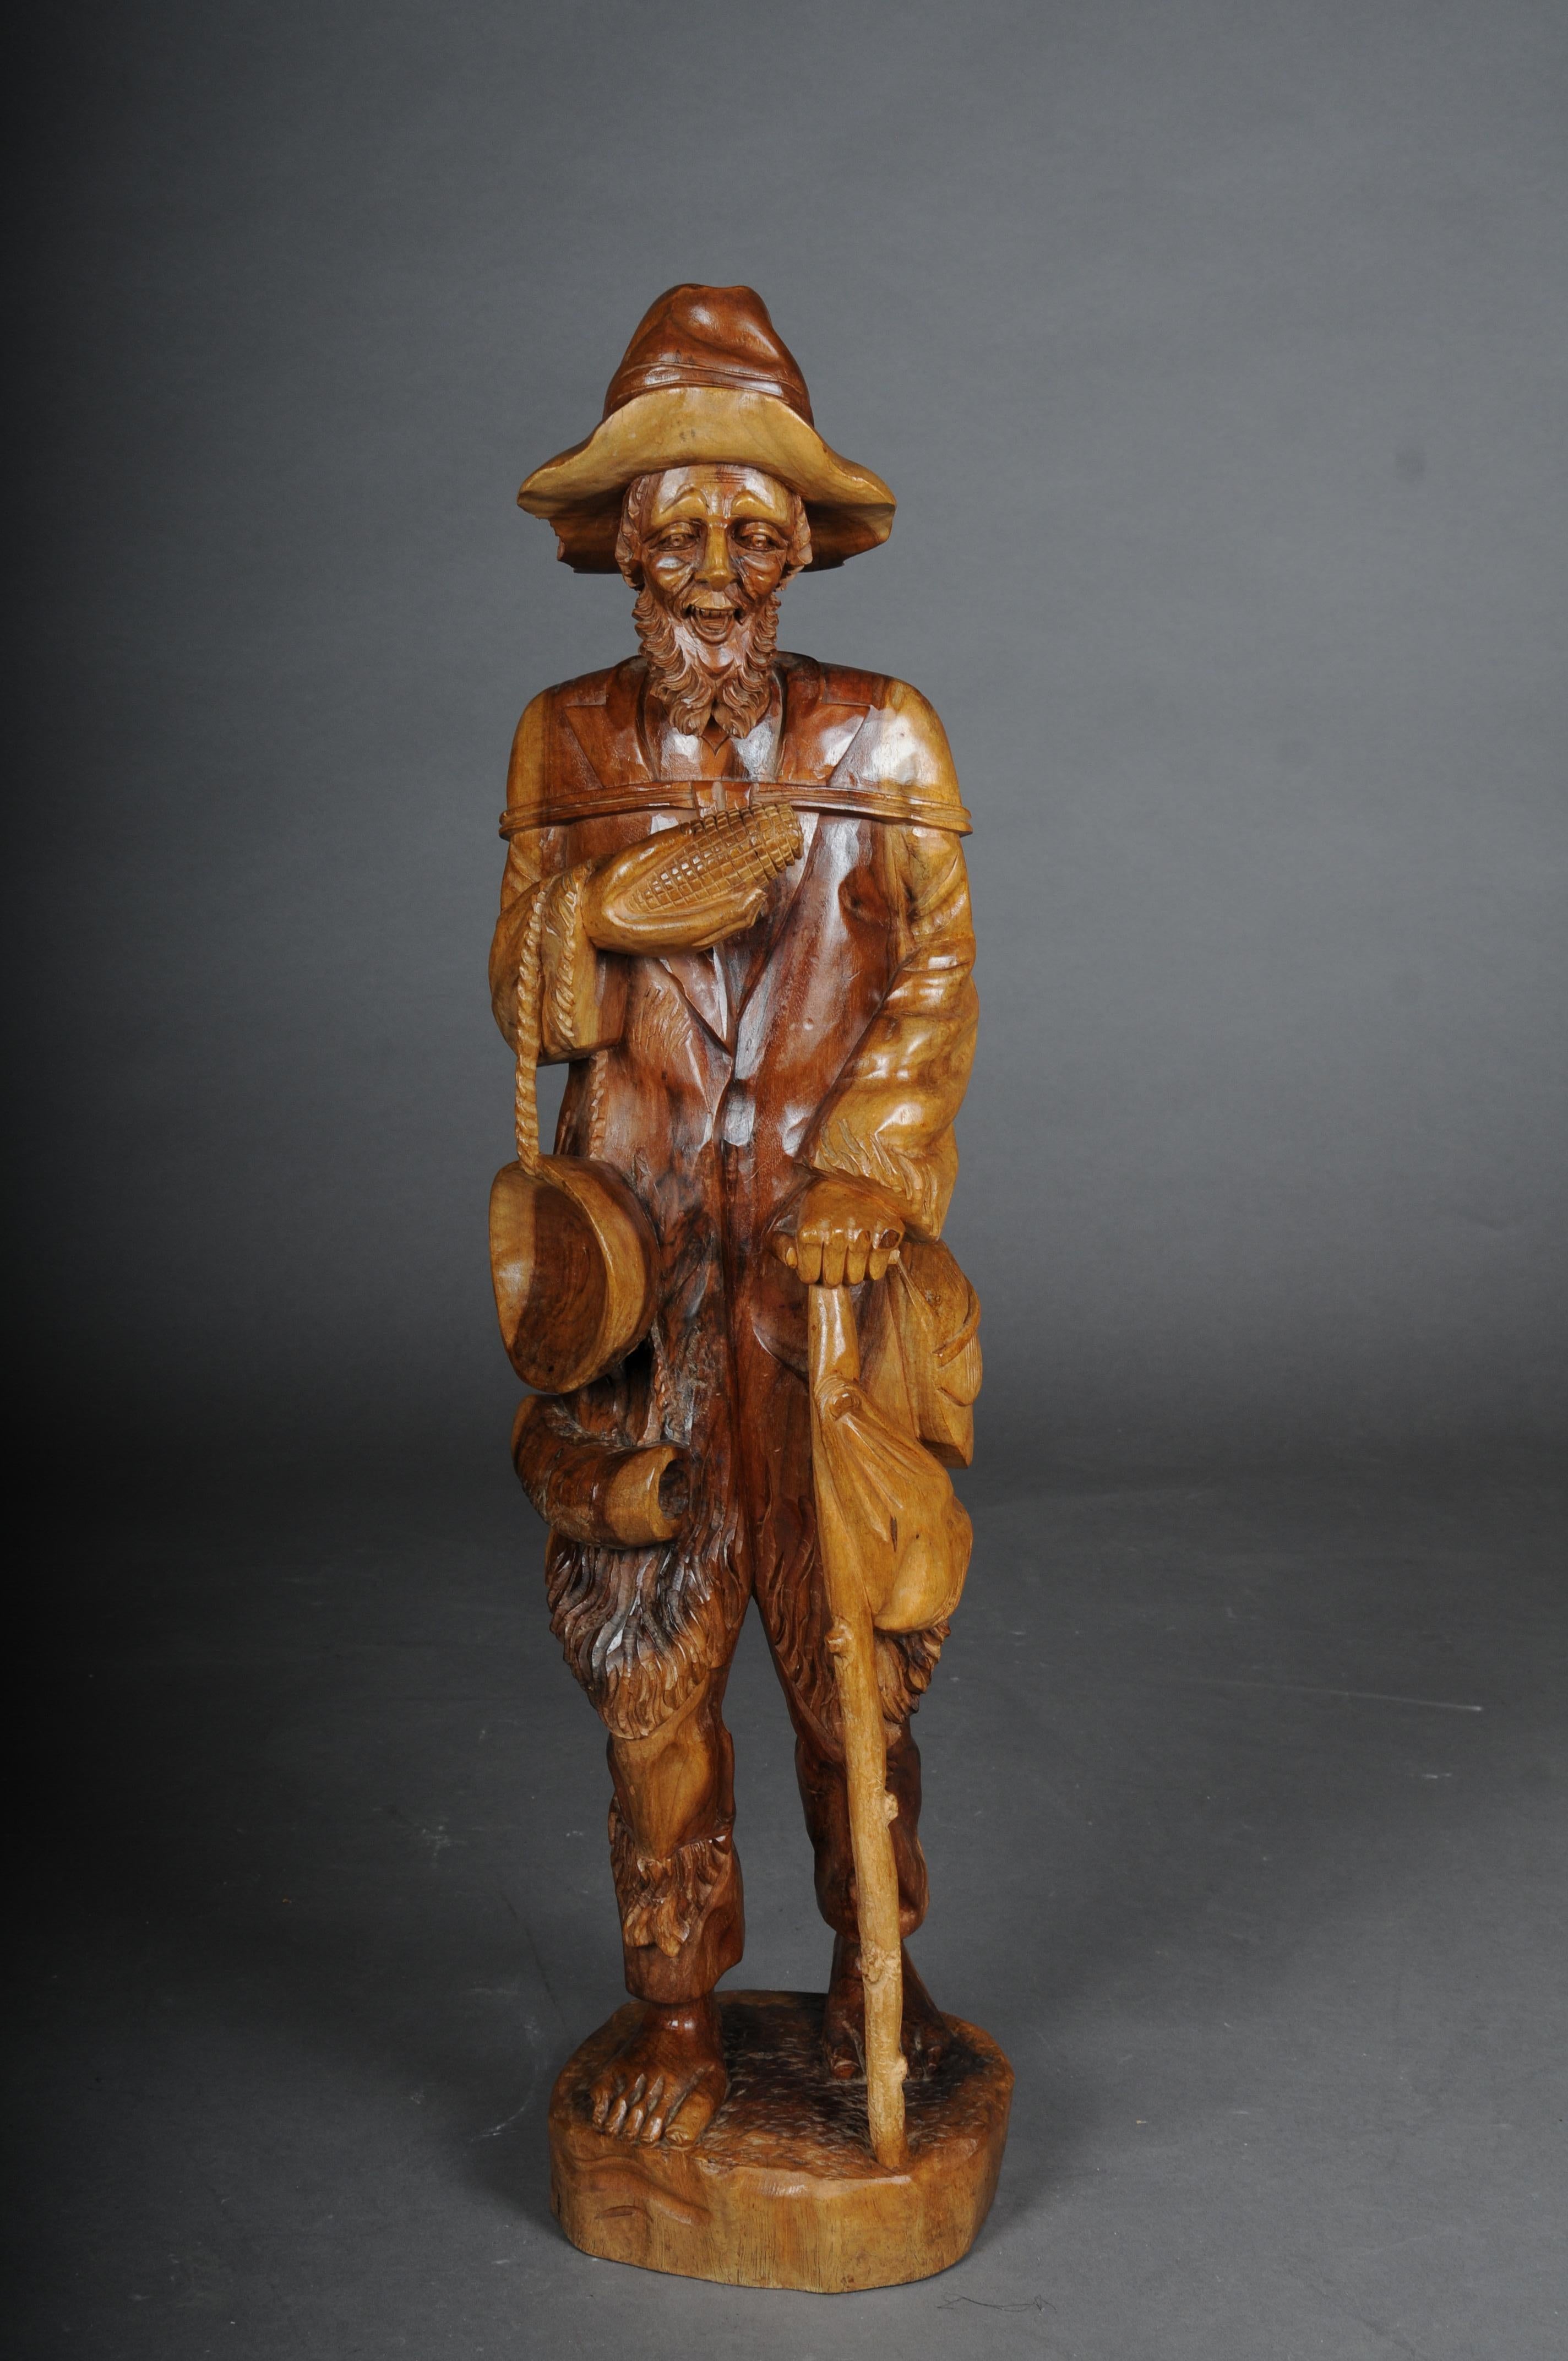 Holzskulptur eines Walkers des 20. Jahrhunderts mit Mais auf dem Kuh, Süddeutschland

Massives Lindenholz. Fein geschnitzte Figur, die einen alten Förster mit einem Kind auf den Schultern und einem Hund darstellt
Süddeutschland/Tirol 20. Jahrhundert